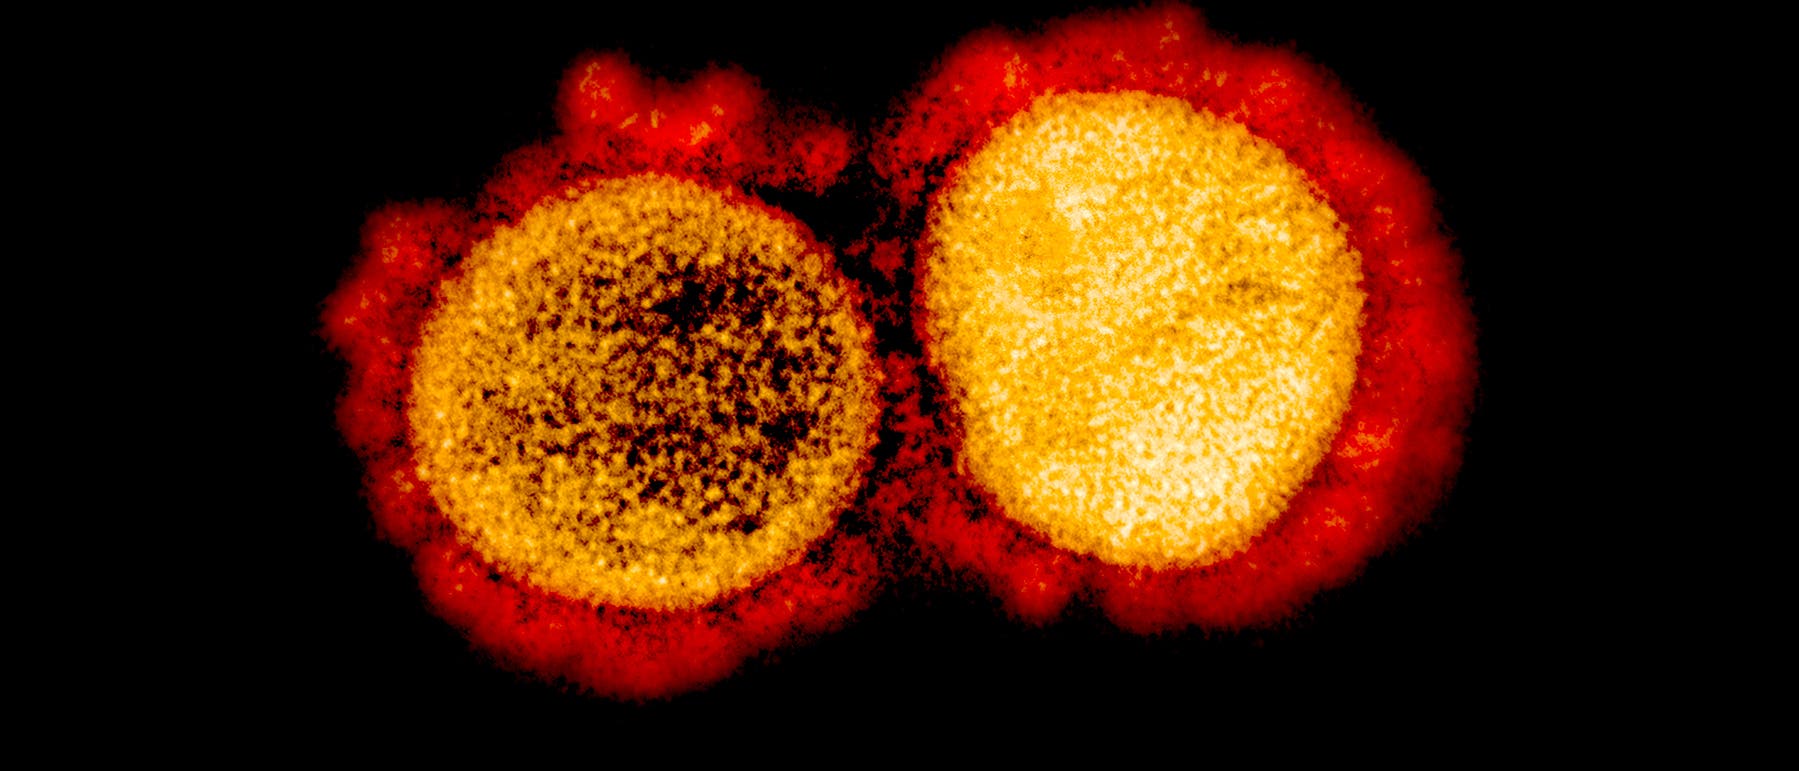 Transmissionenelektronenmikroskopische Aufnahme Sars-CoV-2. Man sieht sehr gut die Krone aus Spike-Proteinen um die Viruspartikel.